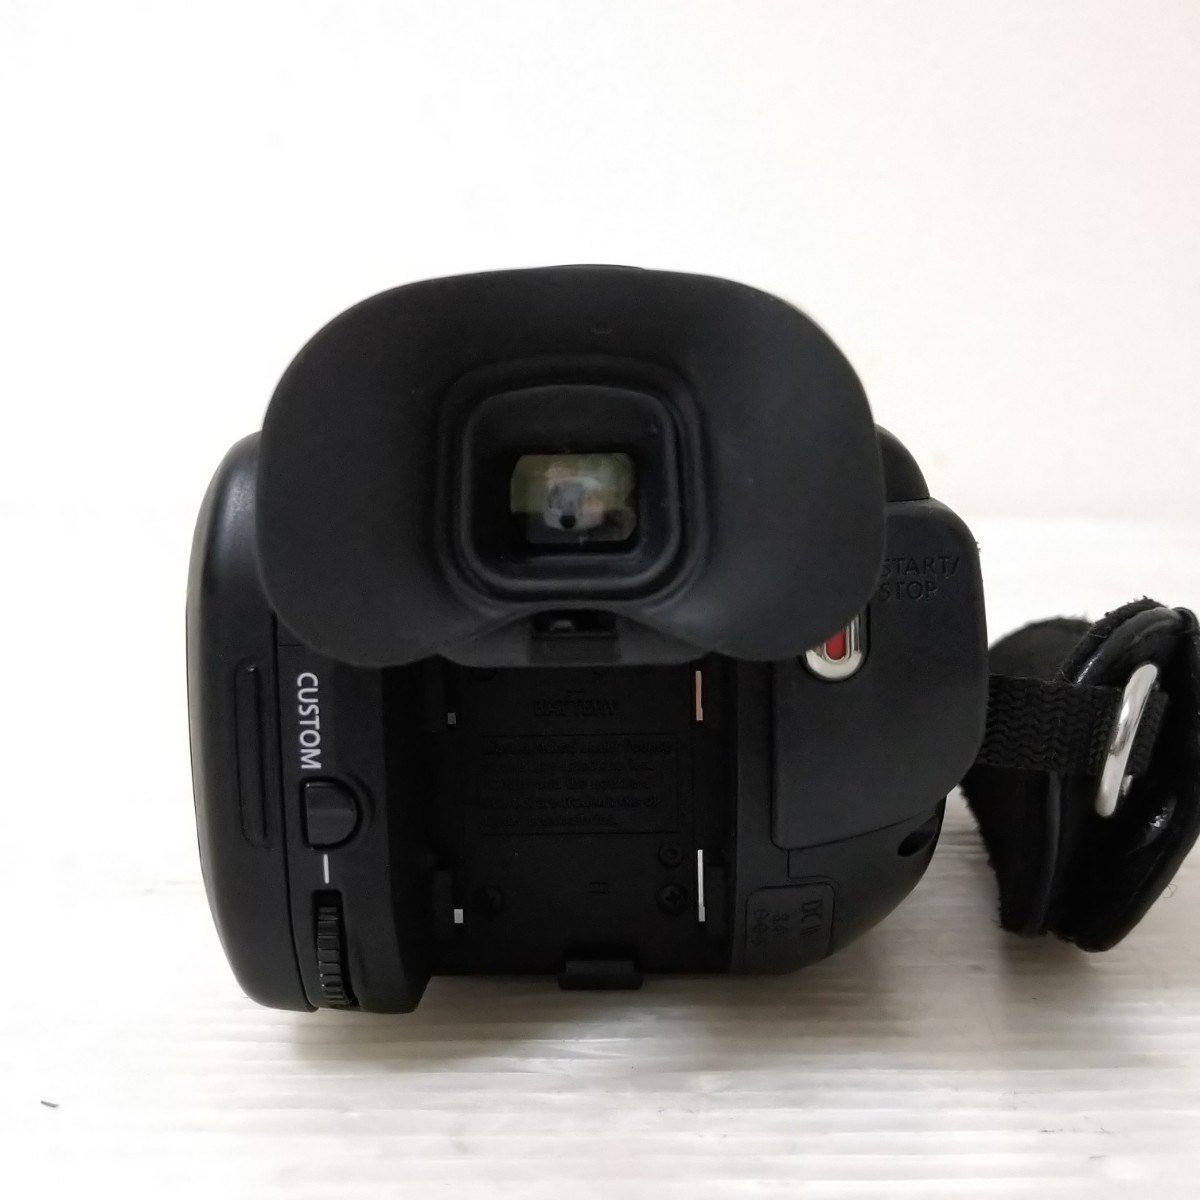 Canon iVIS HF G20 HD Video Camera キャノン HDビデオカメラ デジタル ビデオカメラ 内蔵HD32GB キヤノン デジカメ_画像5